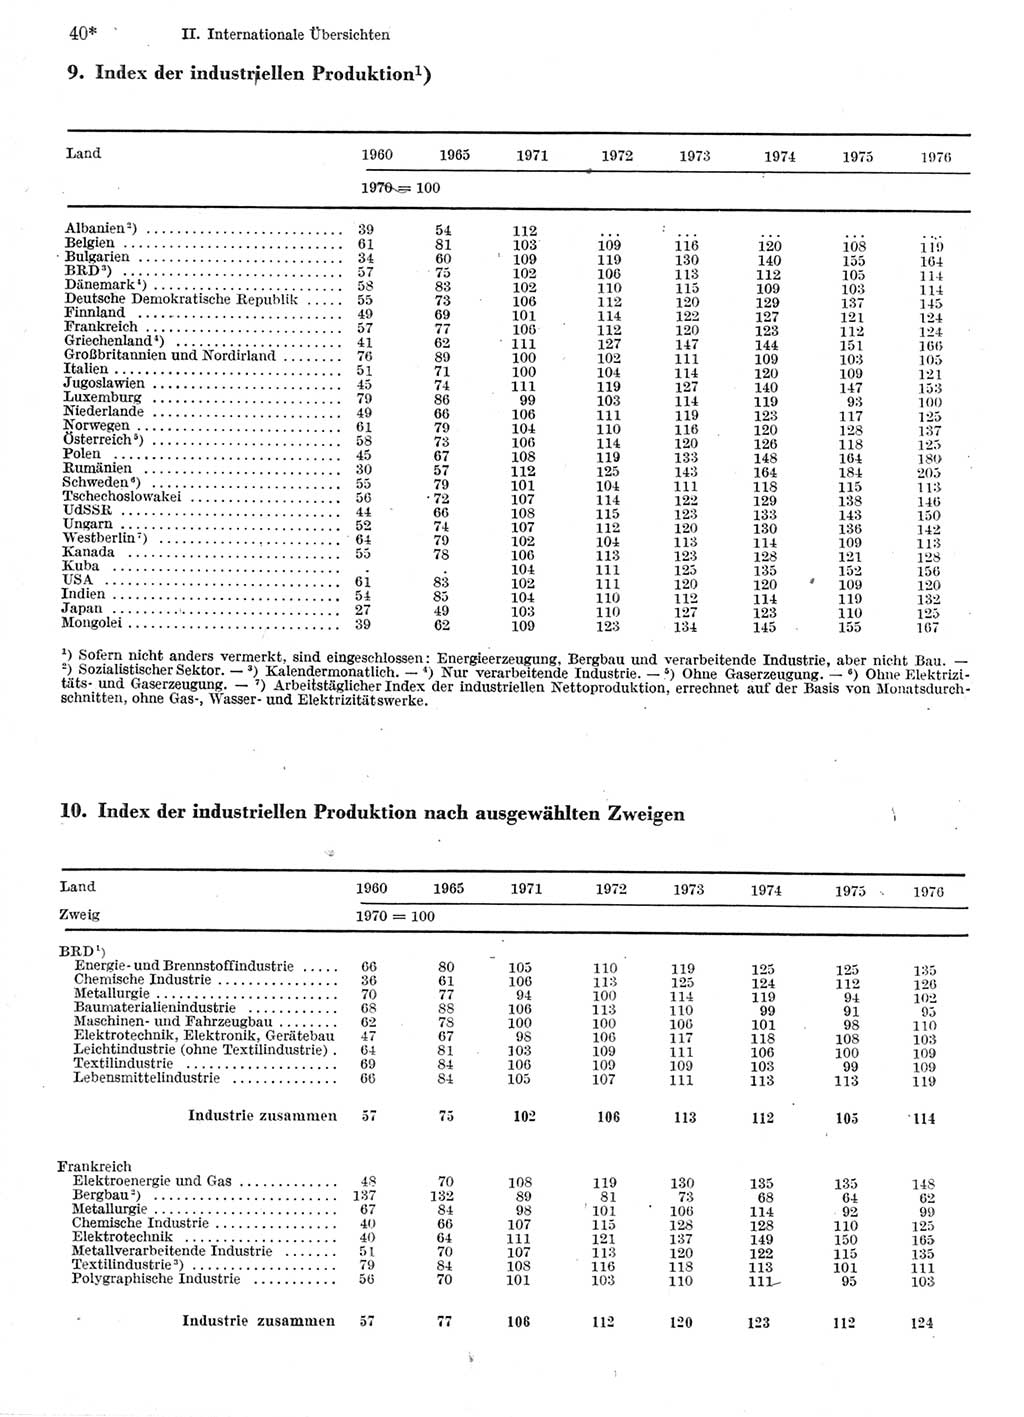 Statistisches Jahrbuch der Deutschen Demokratischen Republik (DDR) 1978, Seite 40 (Stat. Jb. DDR 1978, S. 40)